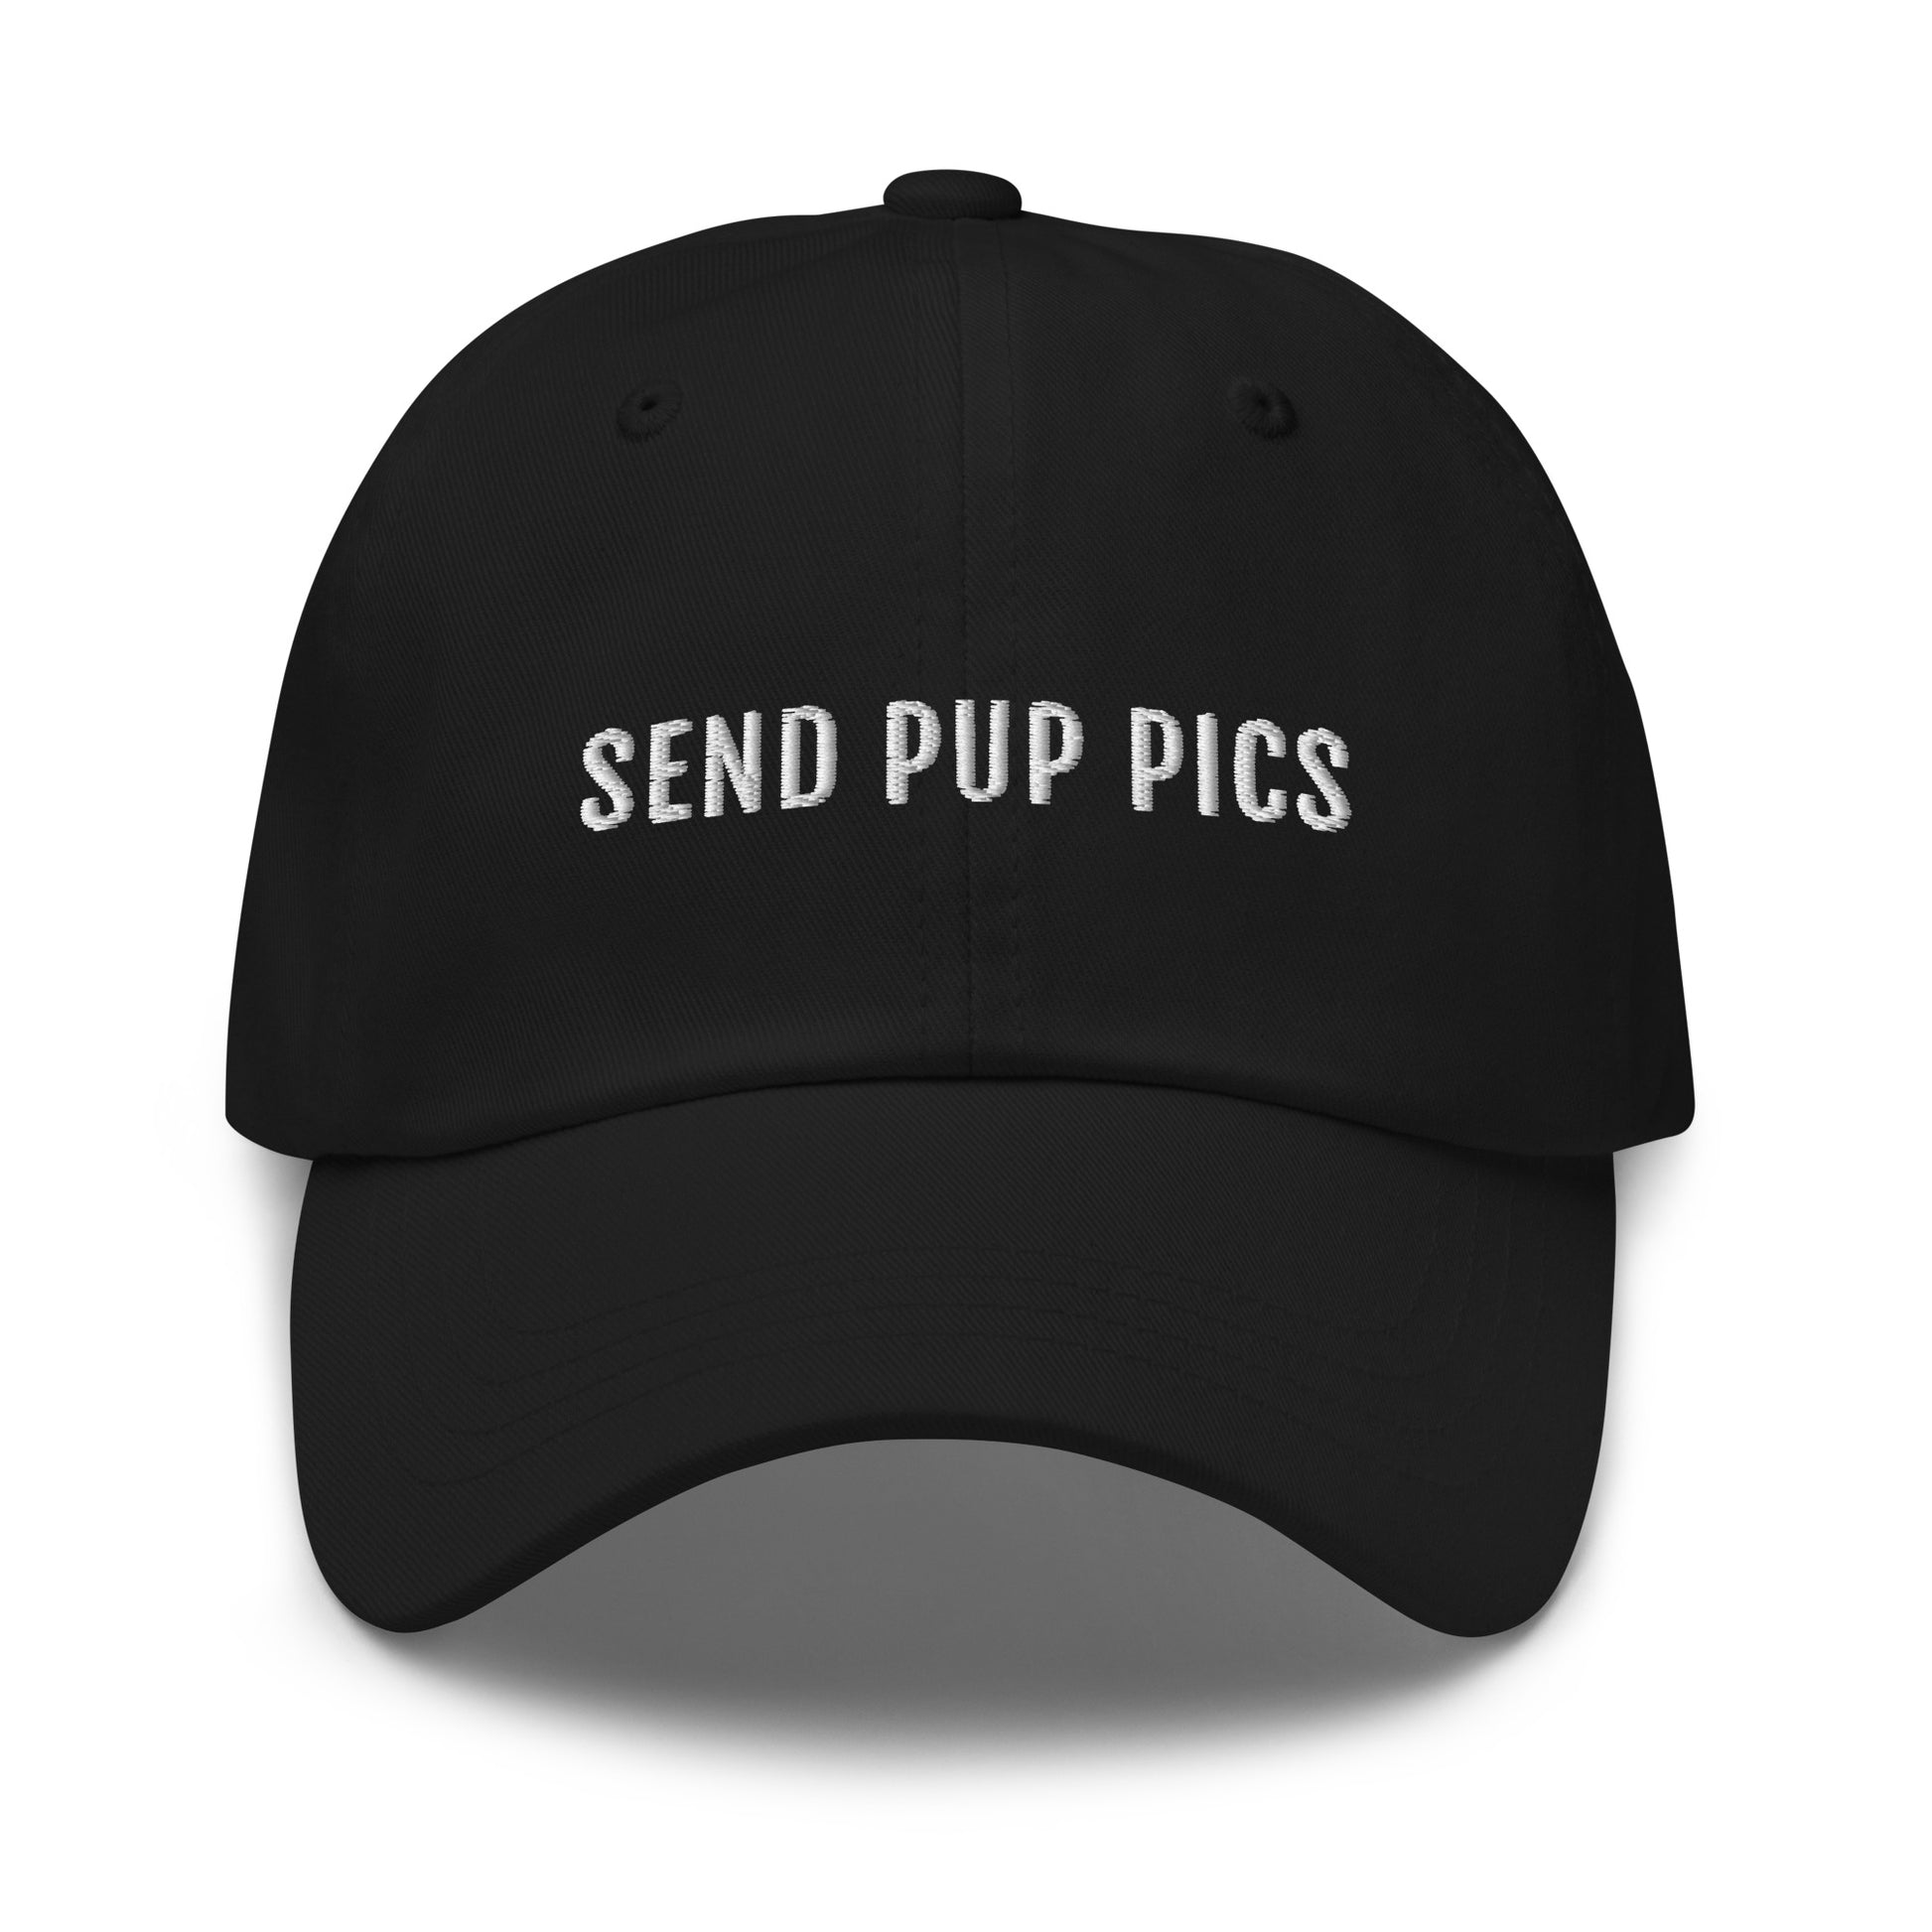 send pup pics black hat